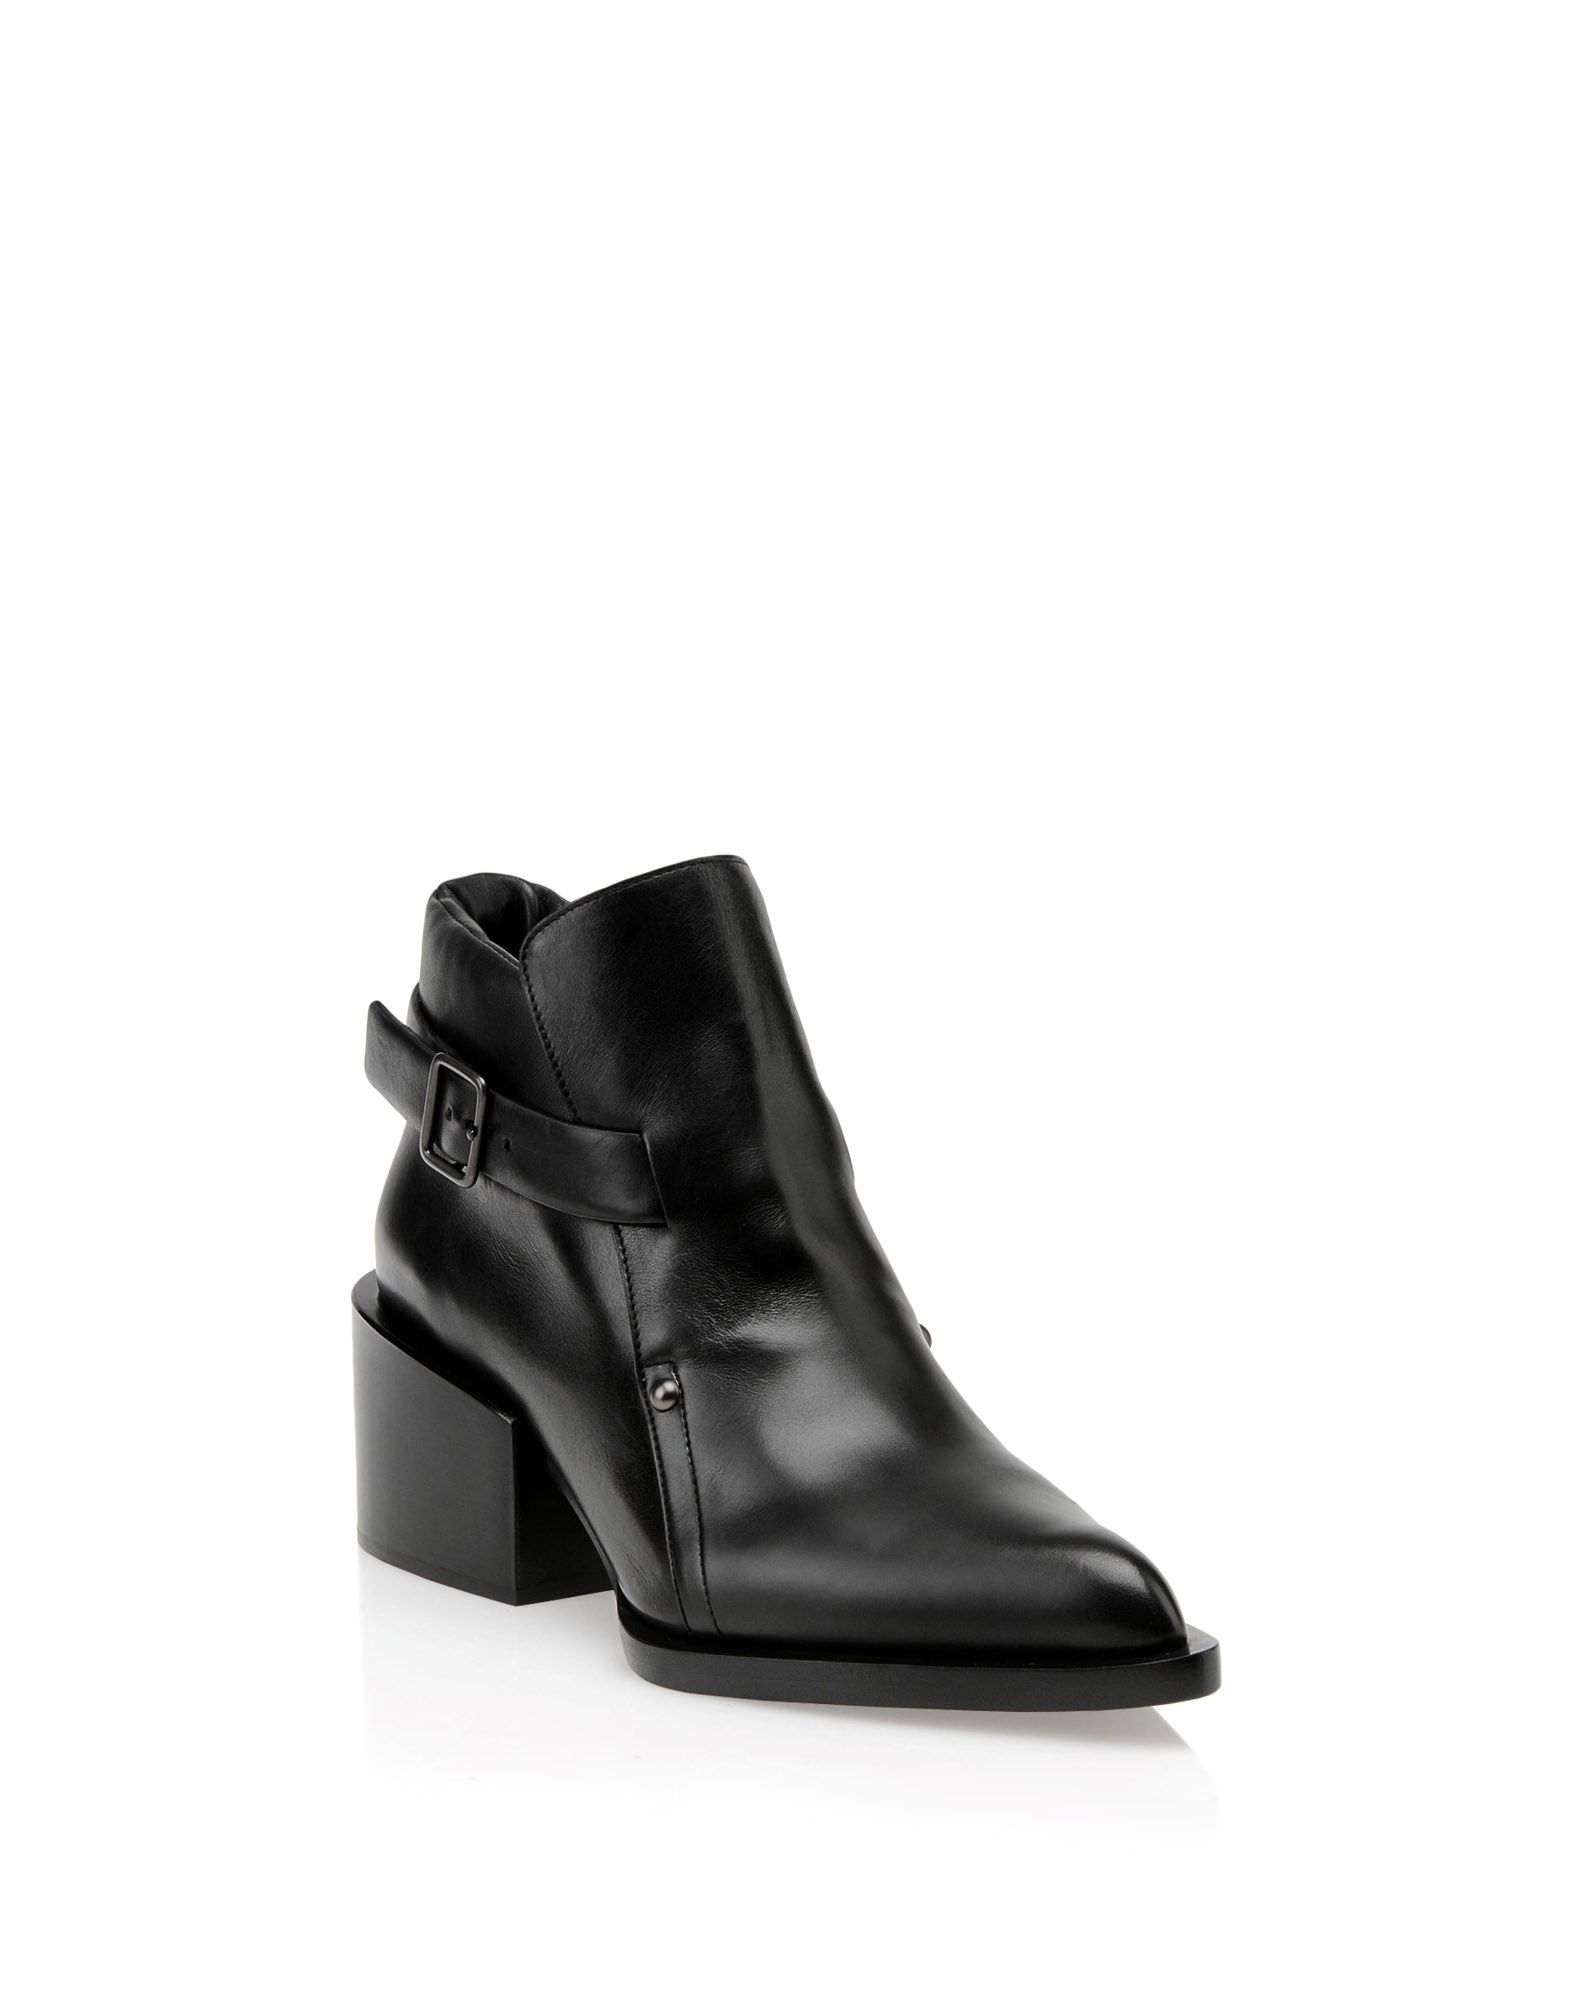 Ankle boots Women - Shoes Women on Jil Sander Online Store